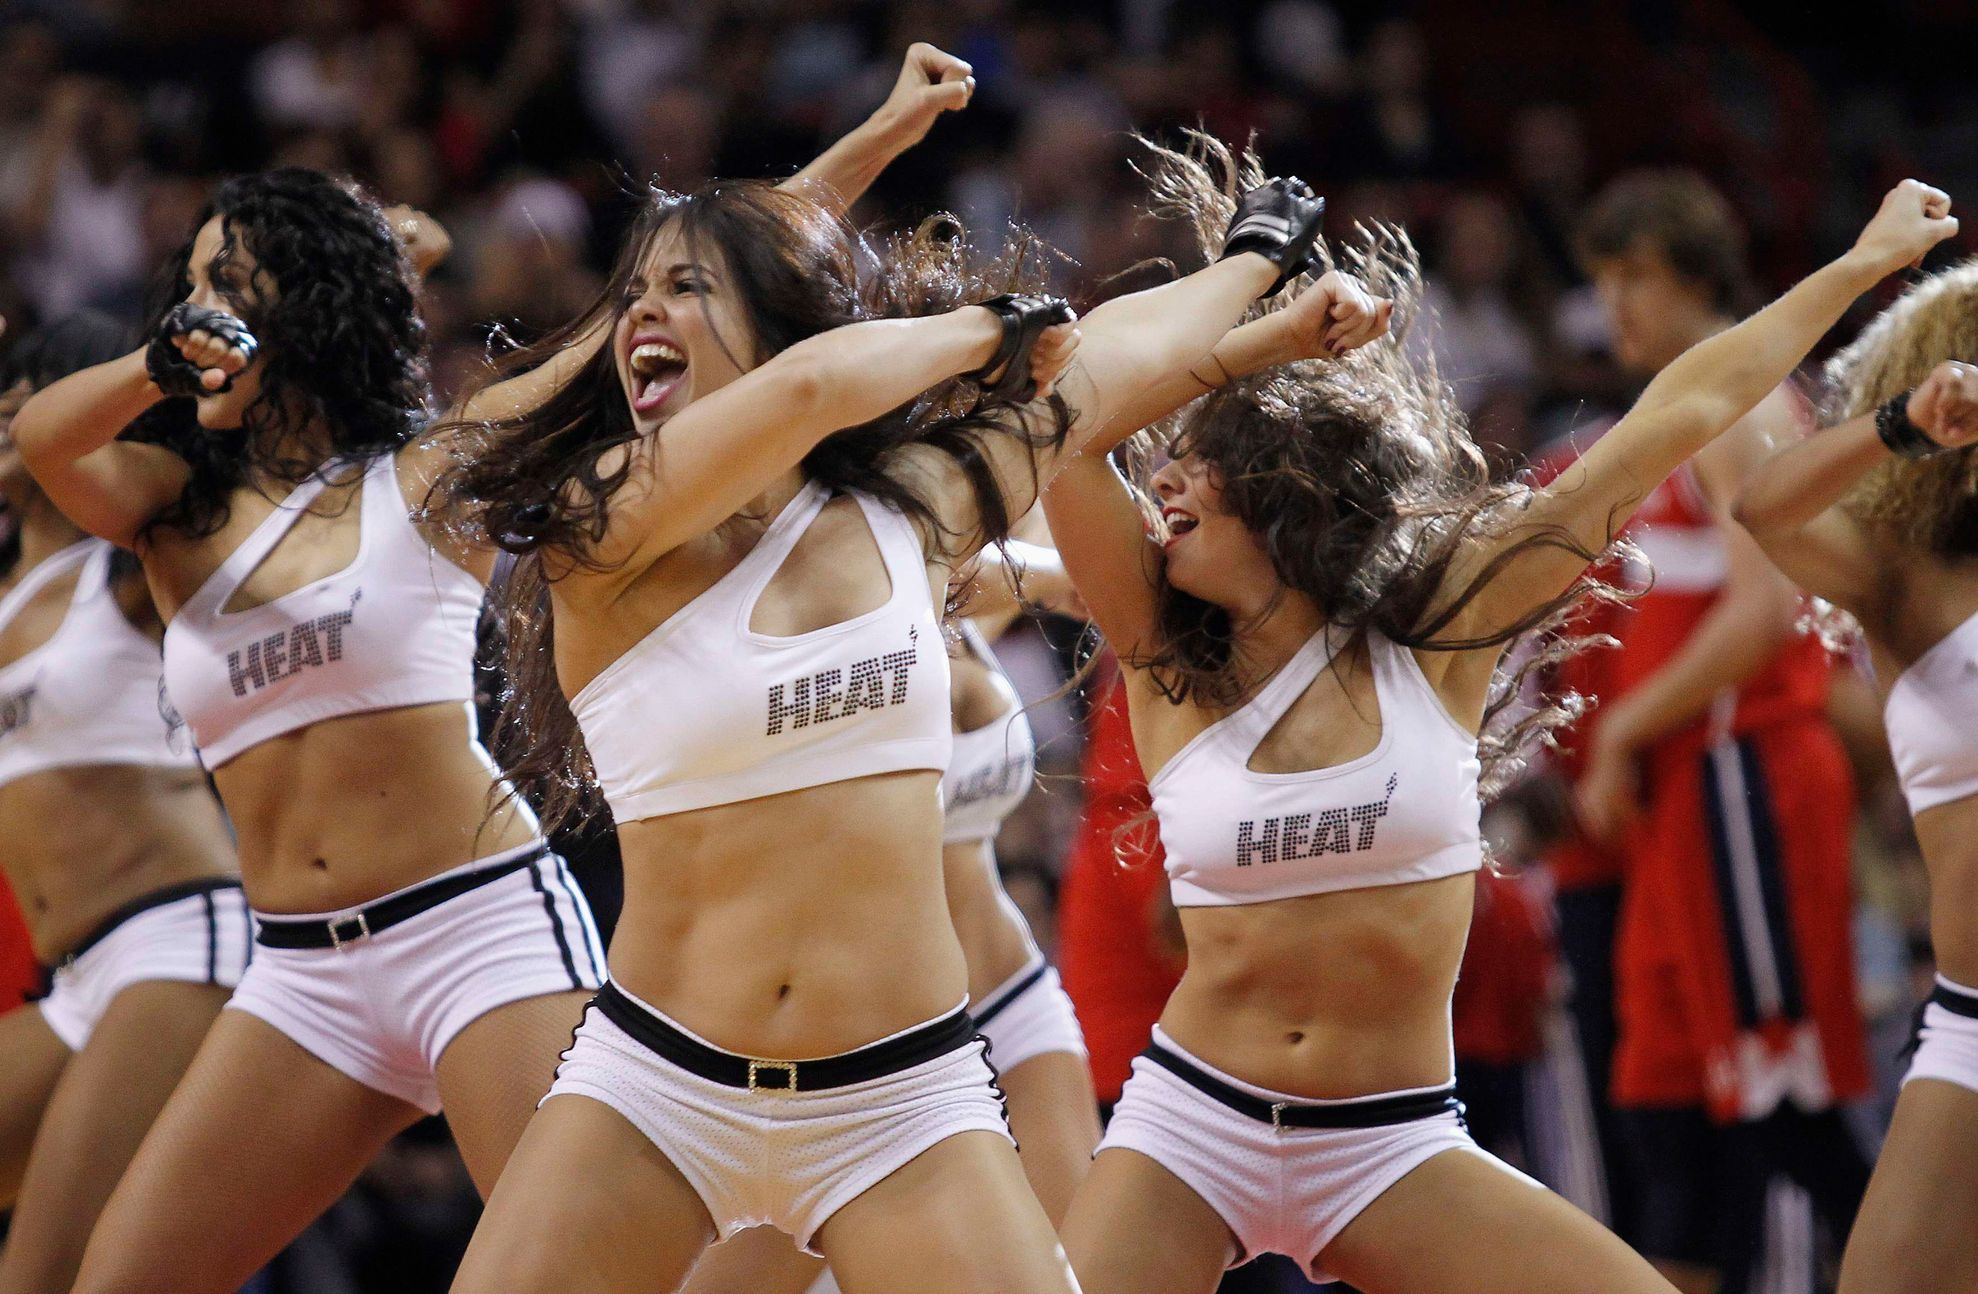 Cheerleaders Miami Heat (NBA)